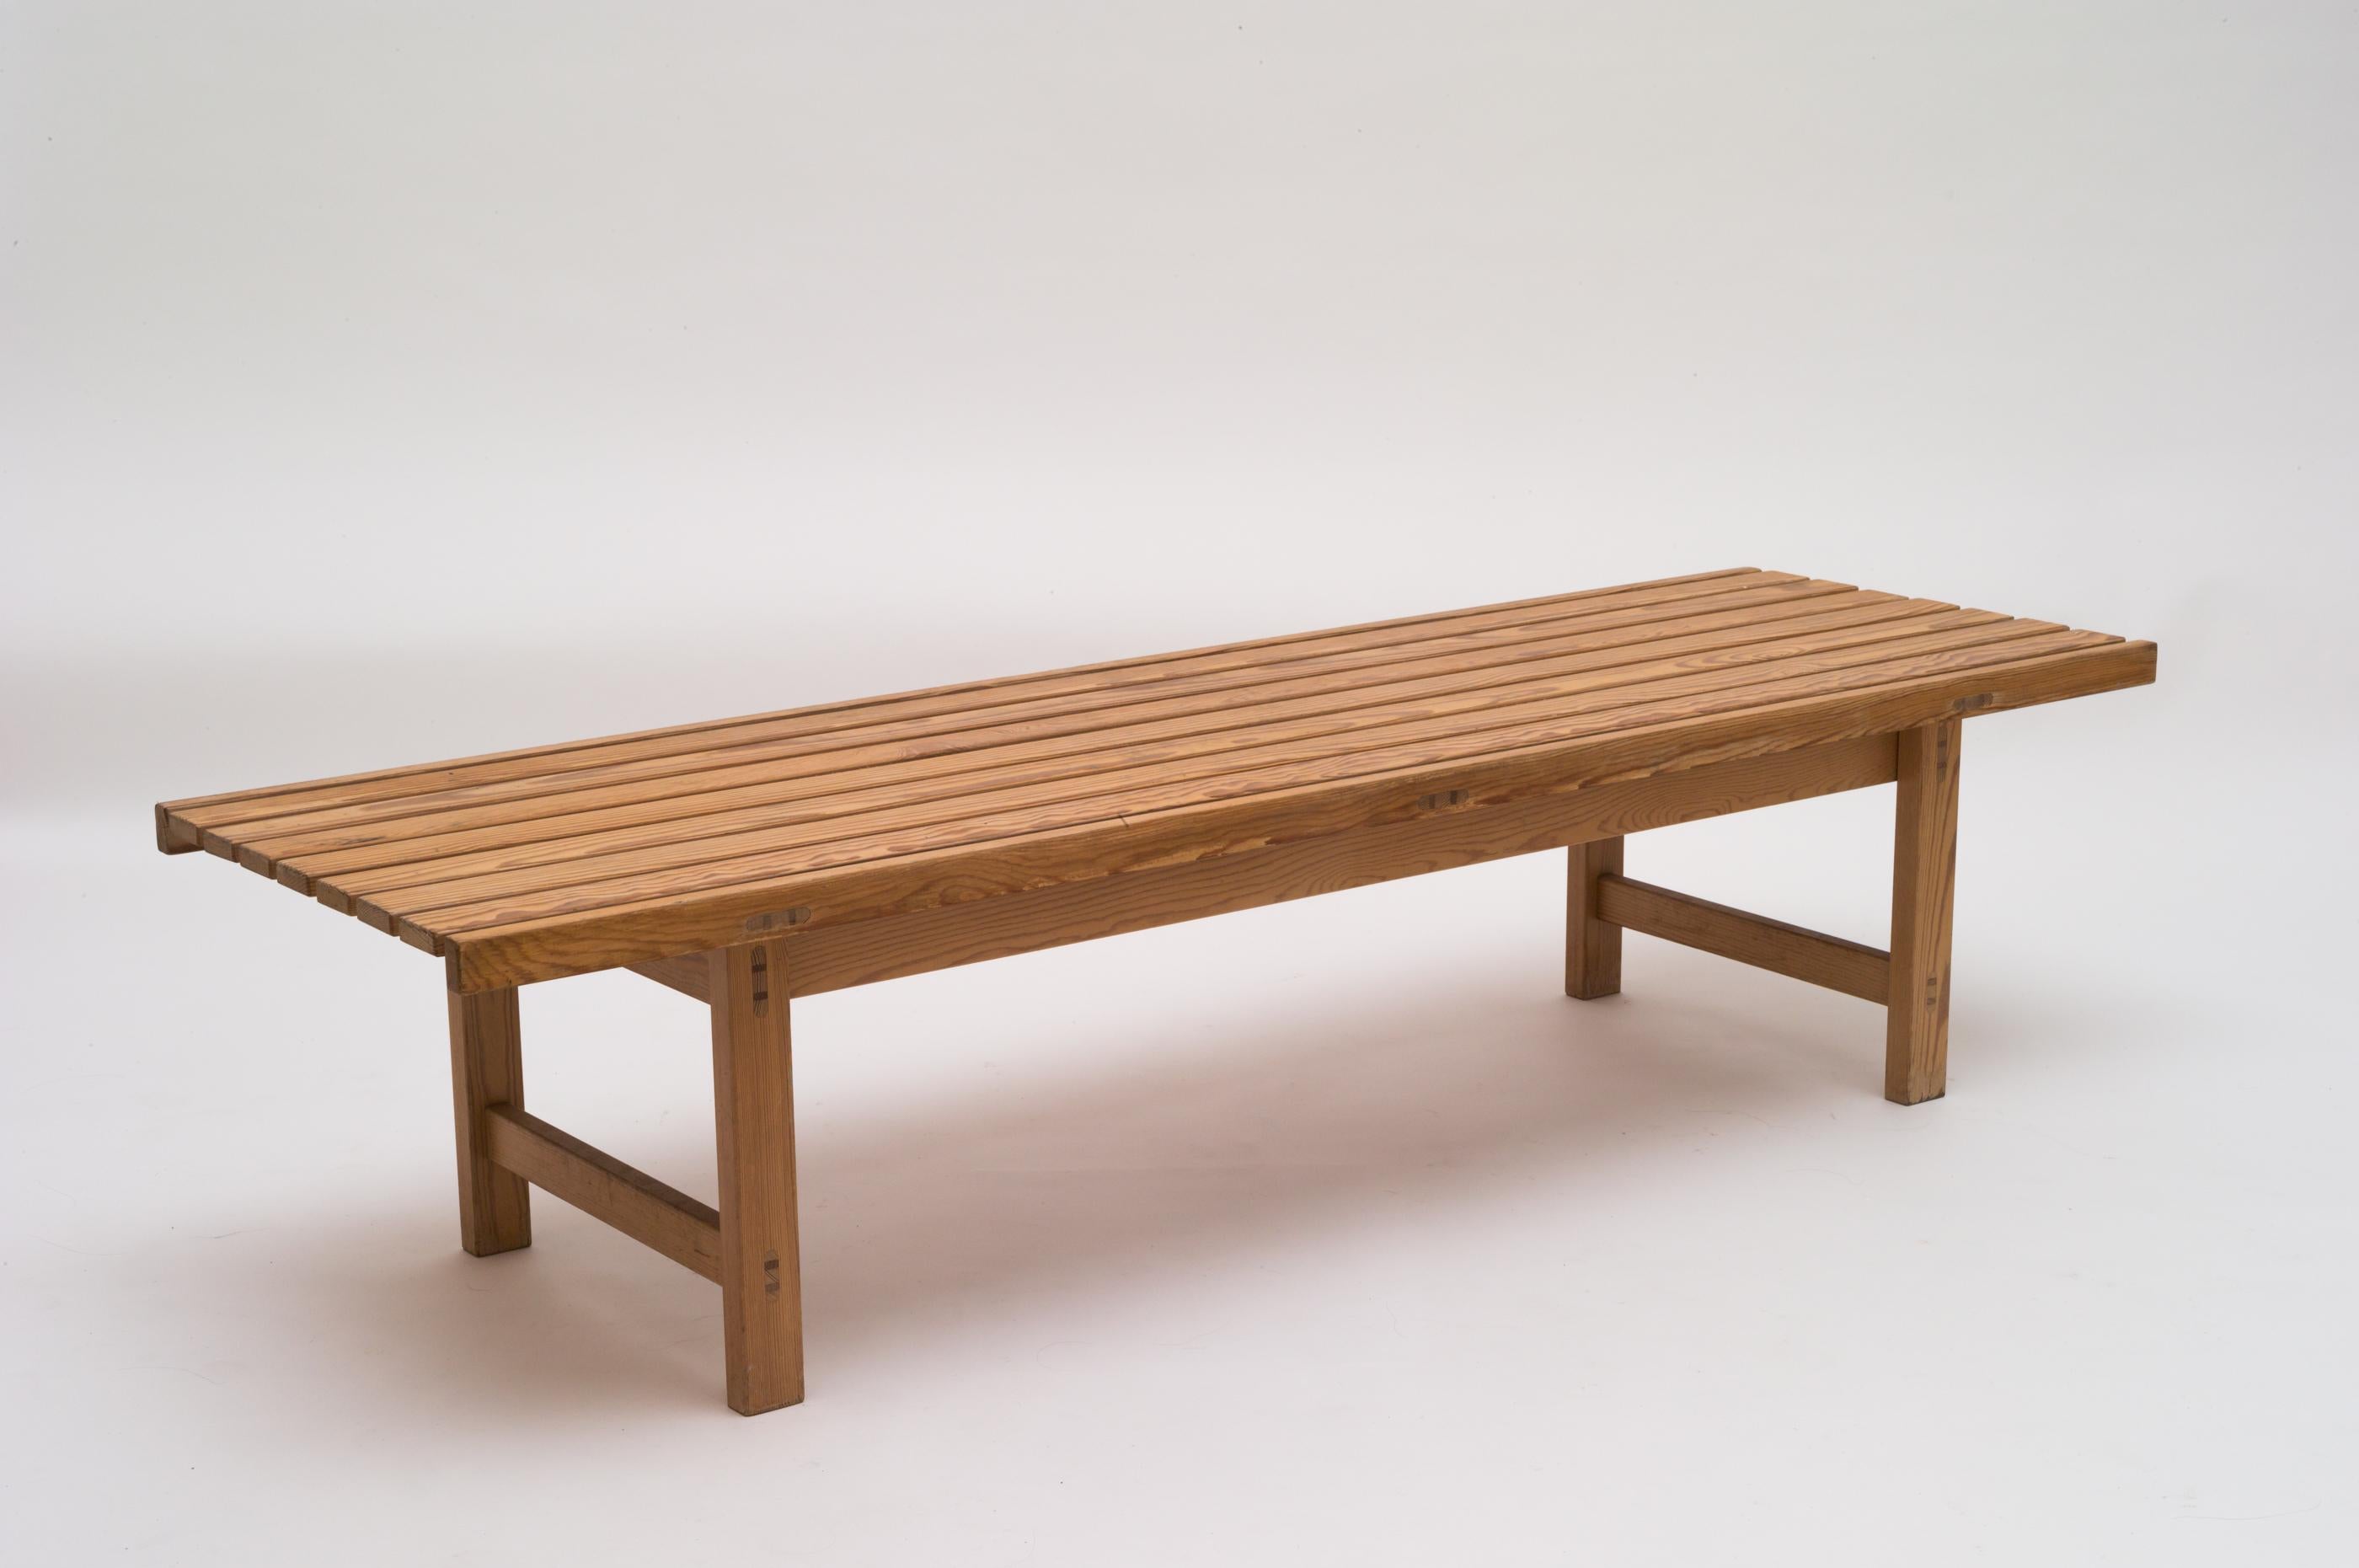 Solid oregon pine bench / coffee table designed by Hugo Svensson for Bjärnums Möbelfabriker, Sweden 1960s. 